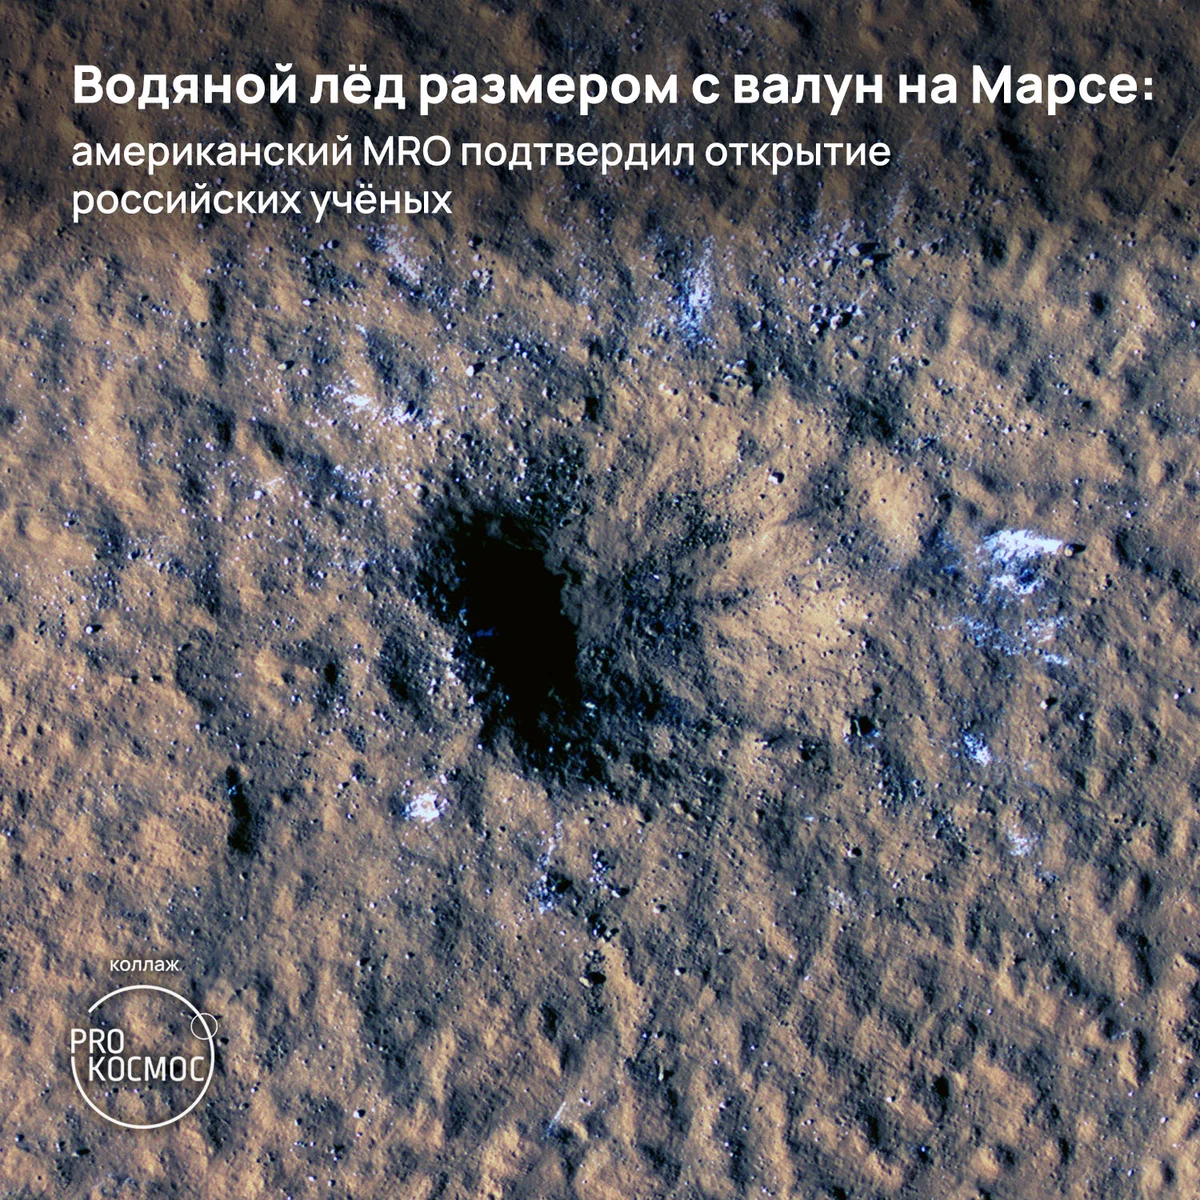 Водяной лёд размером с валун на Марсе: американский MRO подтвердил открытие российских учёных height=1200px width=1200px